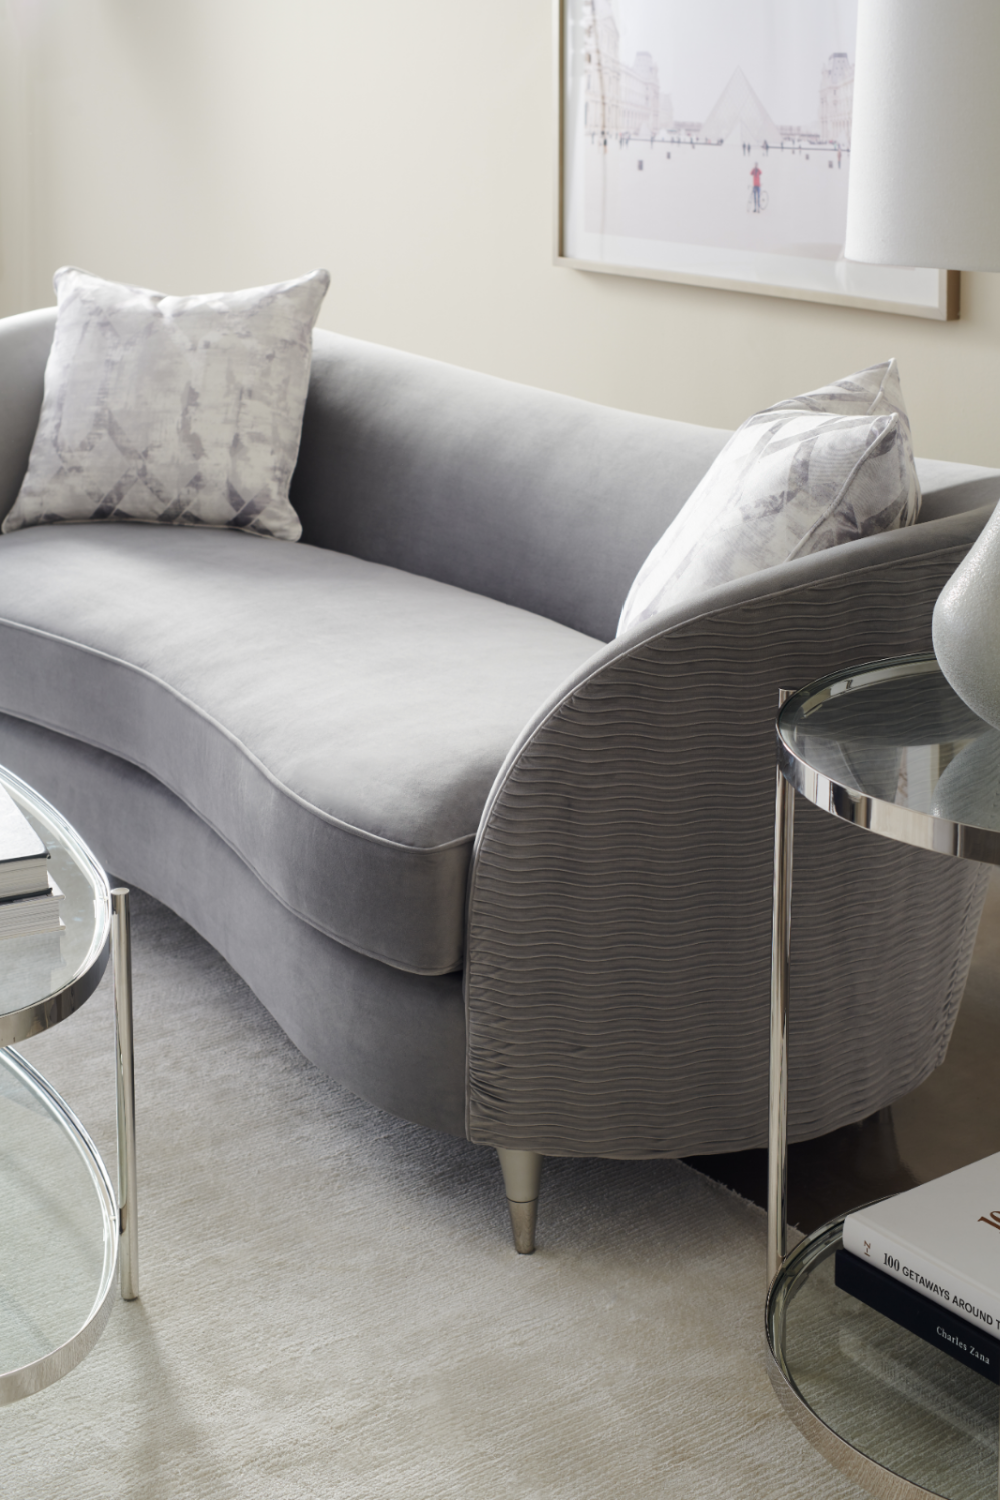 Gray Velvet Curved Sofa | Caracole Farrah | Oroa.com